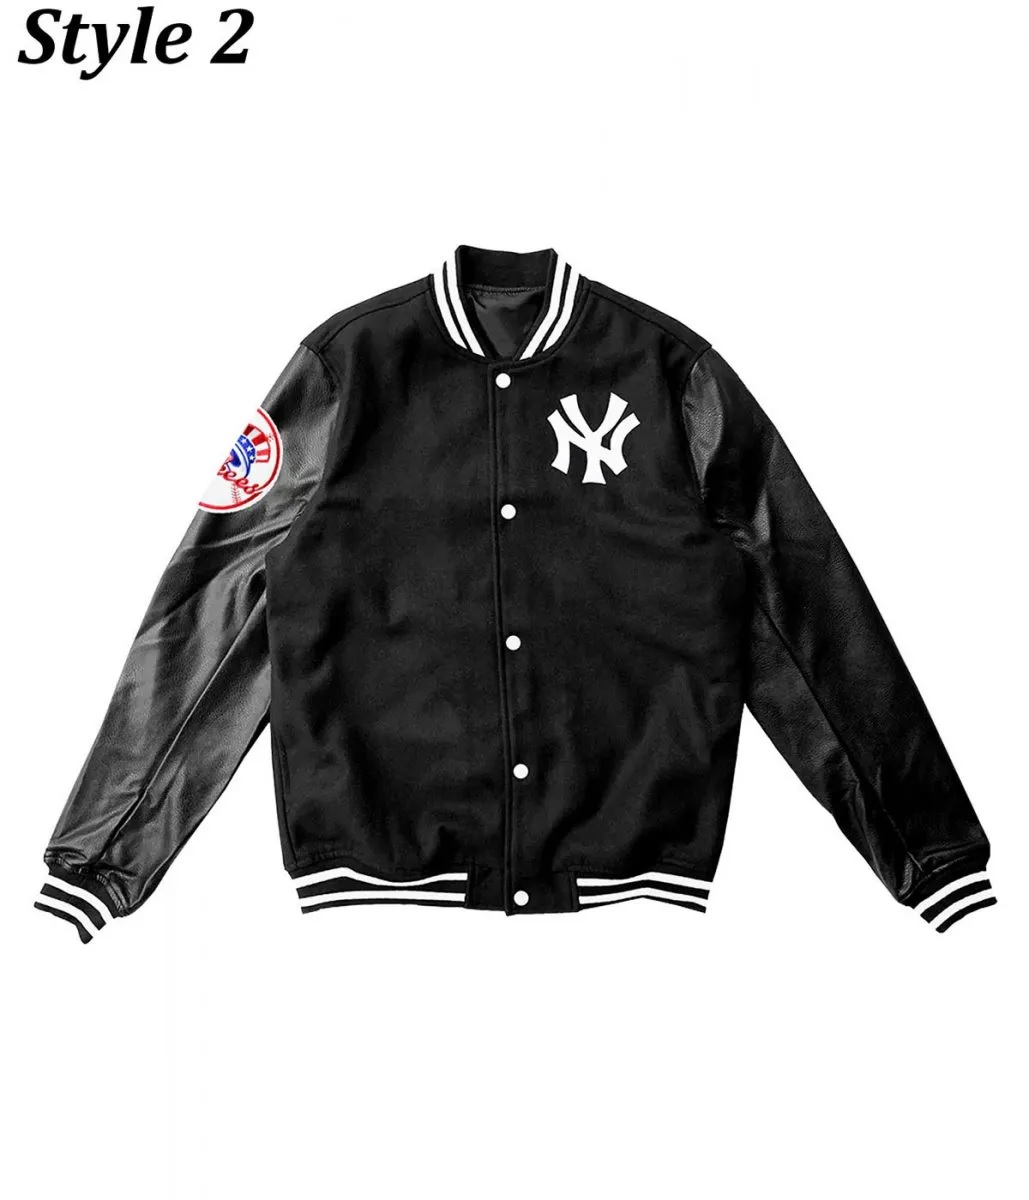 NY Yankees Varsity Wool Leather Black Jacket